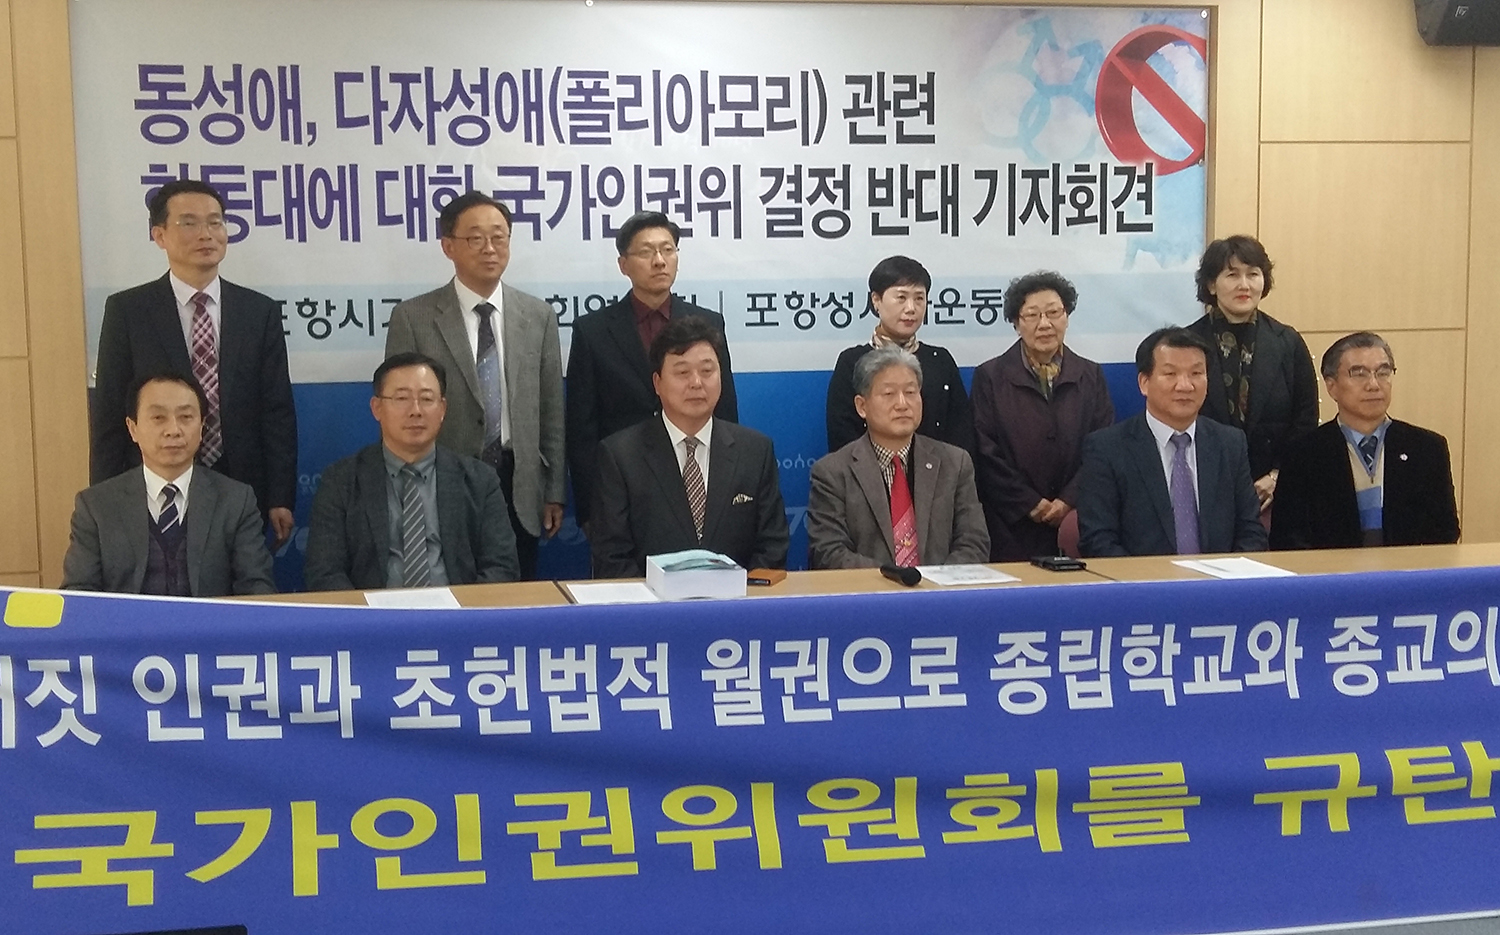 성시화운동본부 한동대 관련 기자회견21.jpg